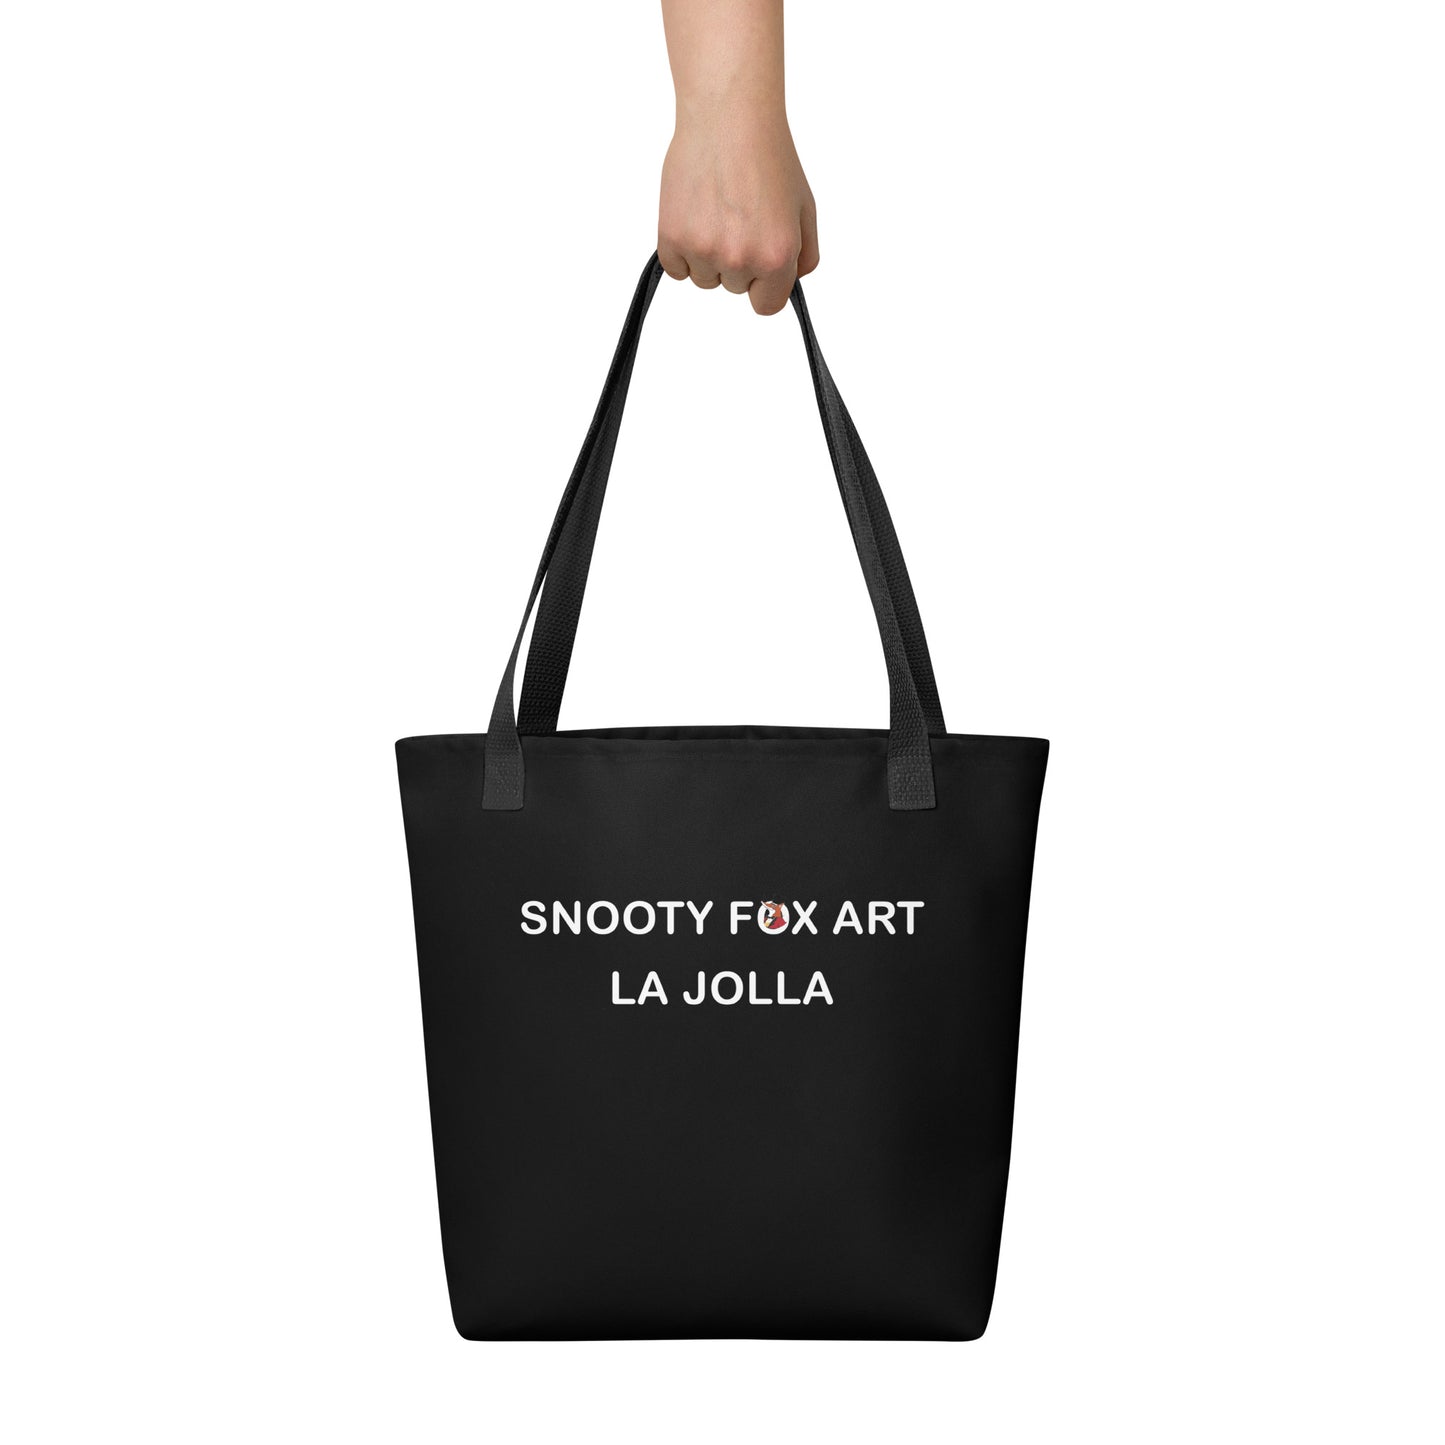 Snooty Fox Art Tote Bag - Snooty Fox Art Tote Bag